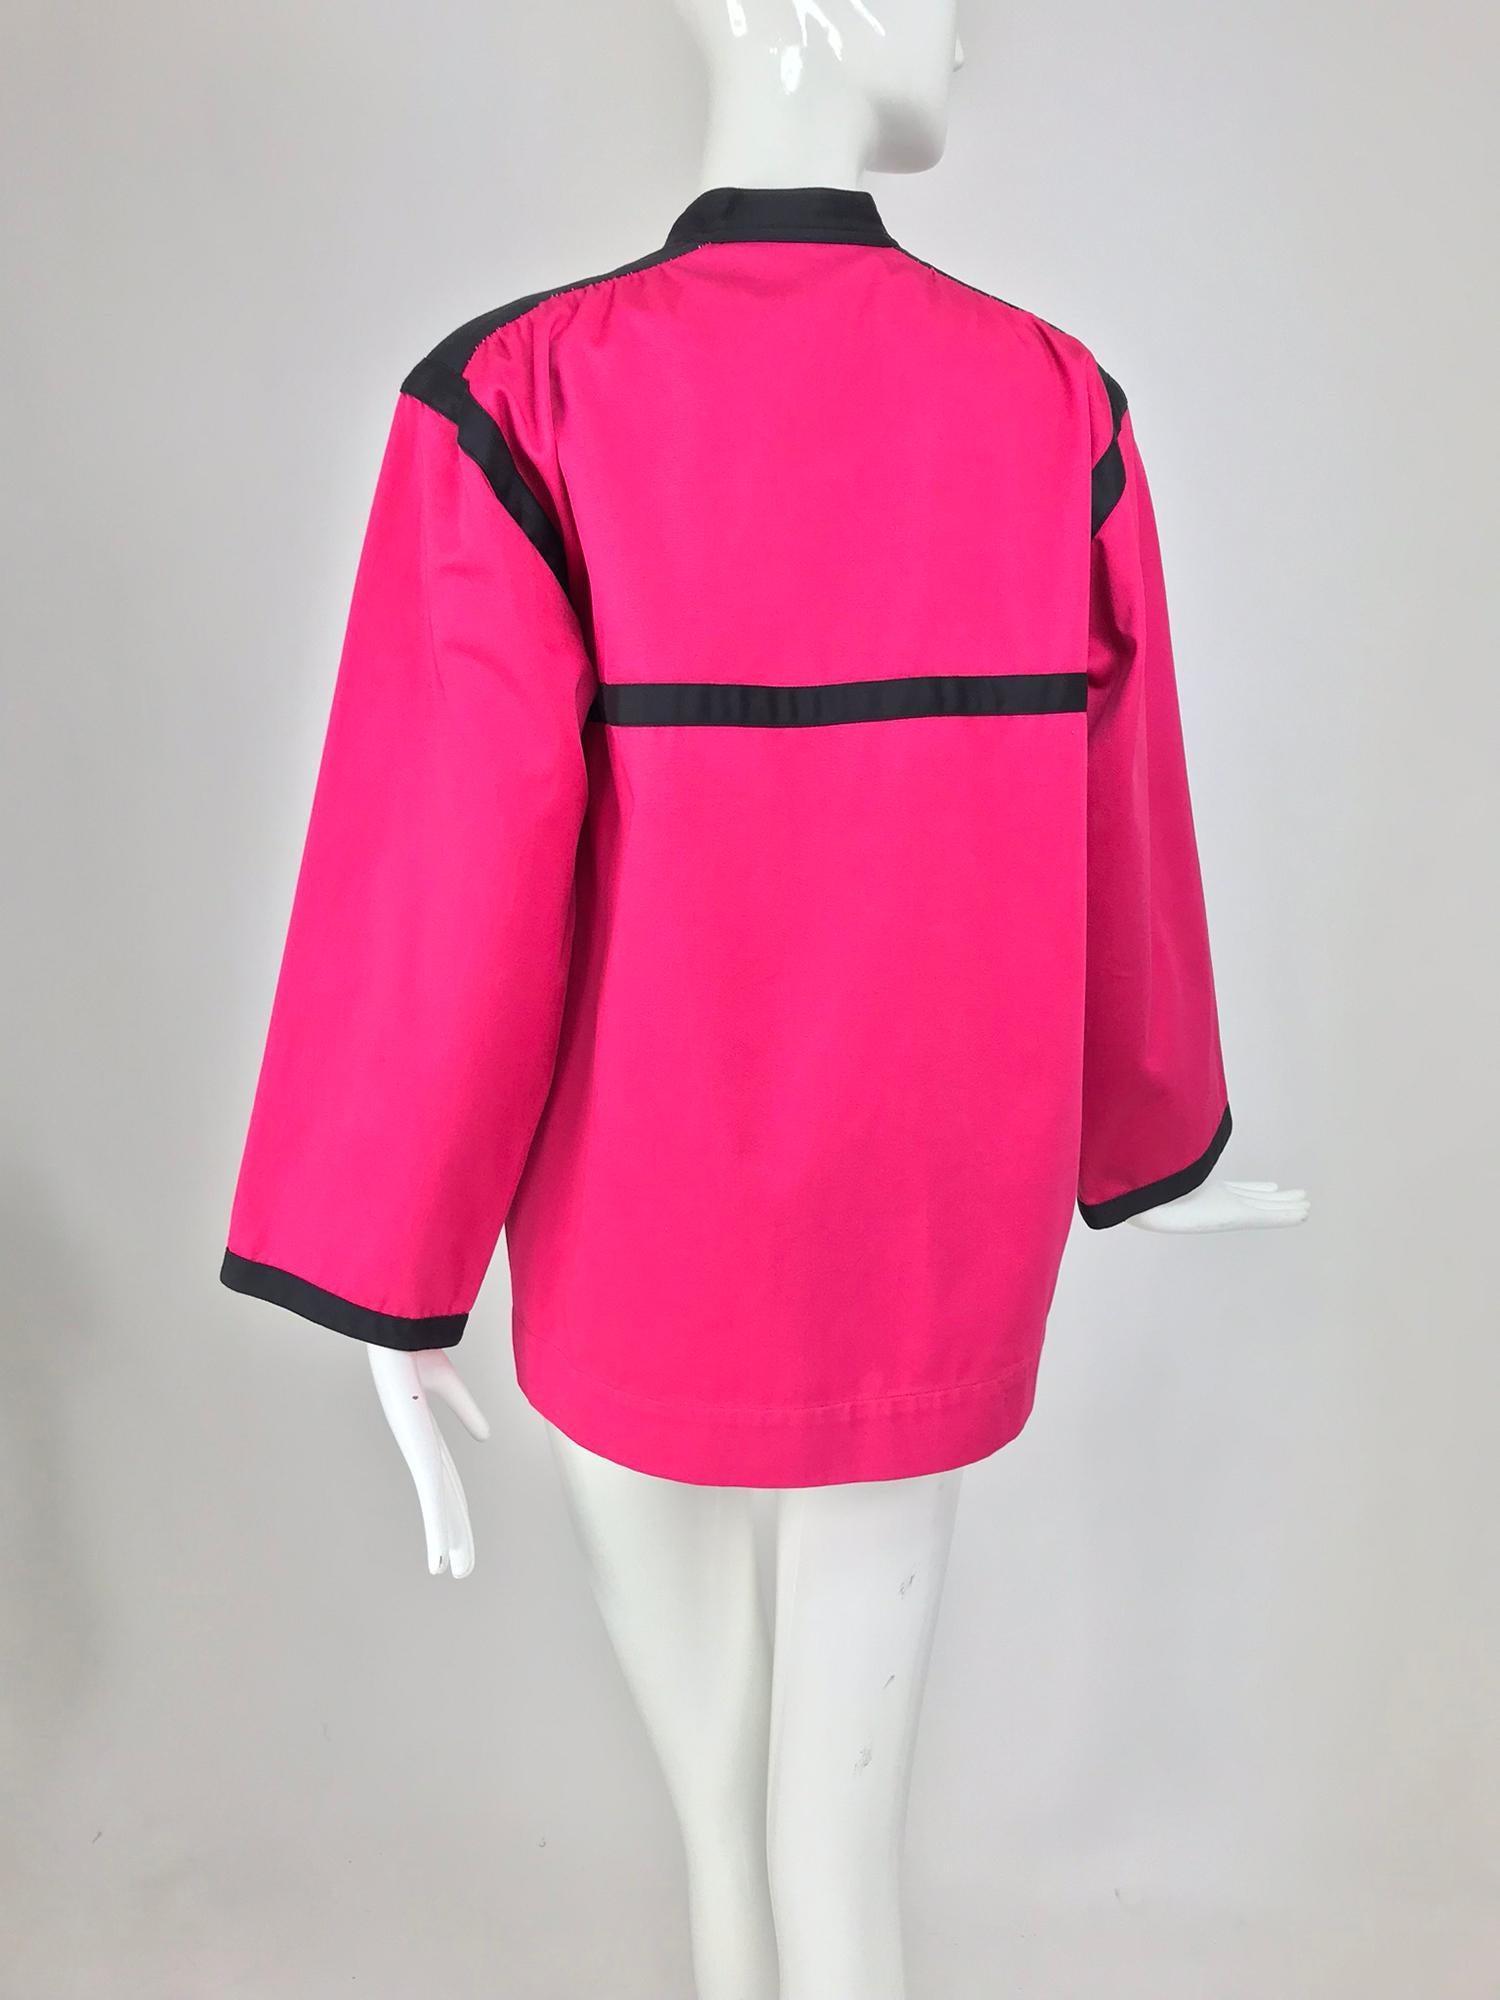 Yves Saint Laurent Hot Pink Colour Block Jacket 1970s For Sale 3